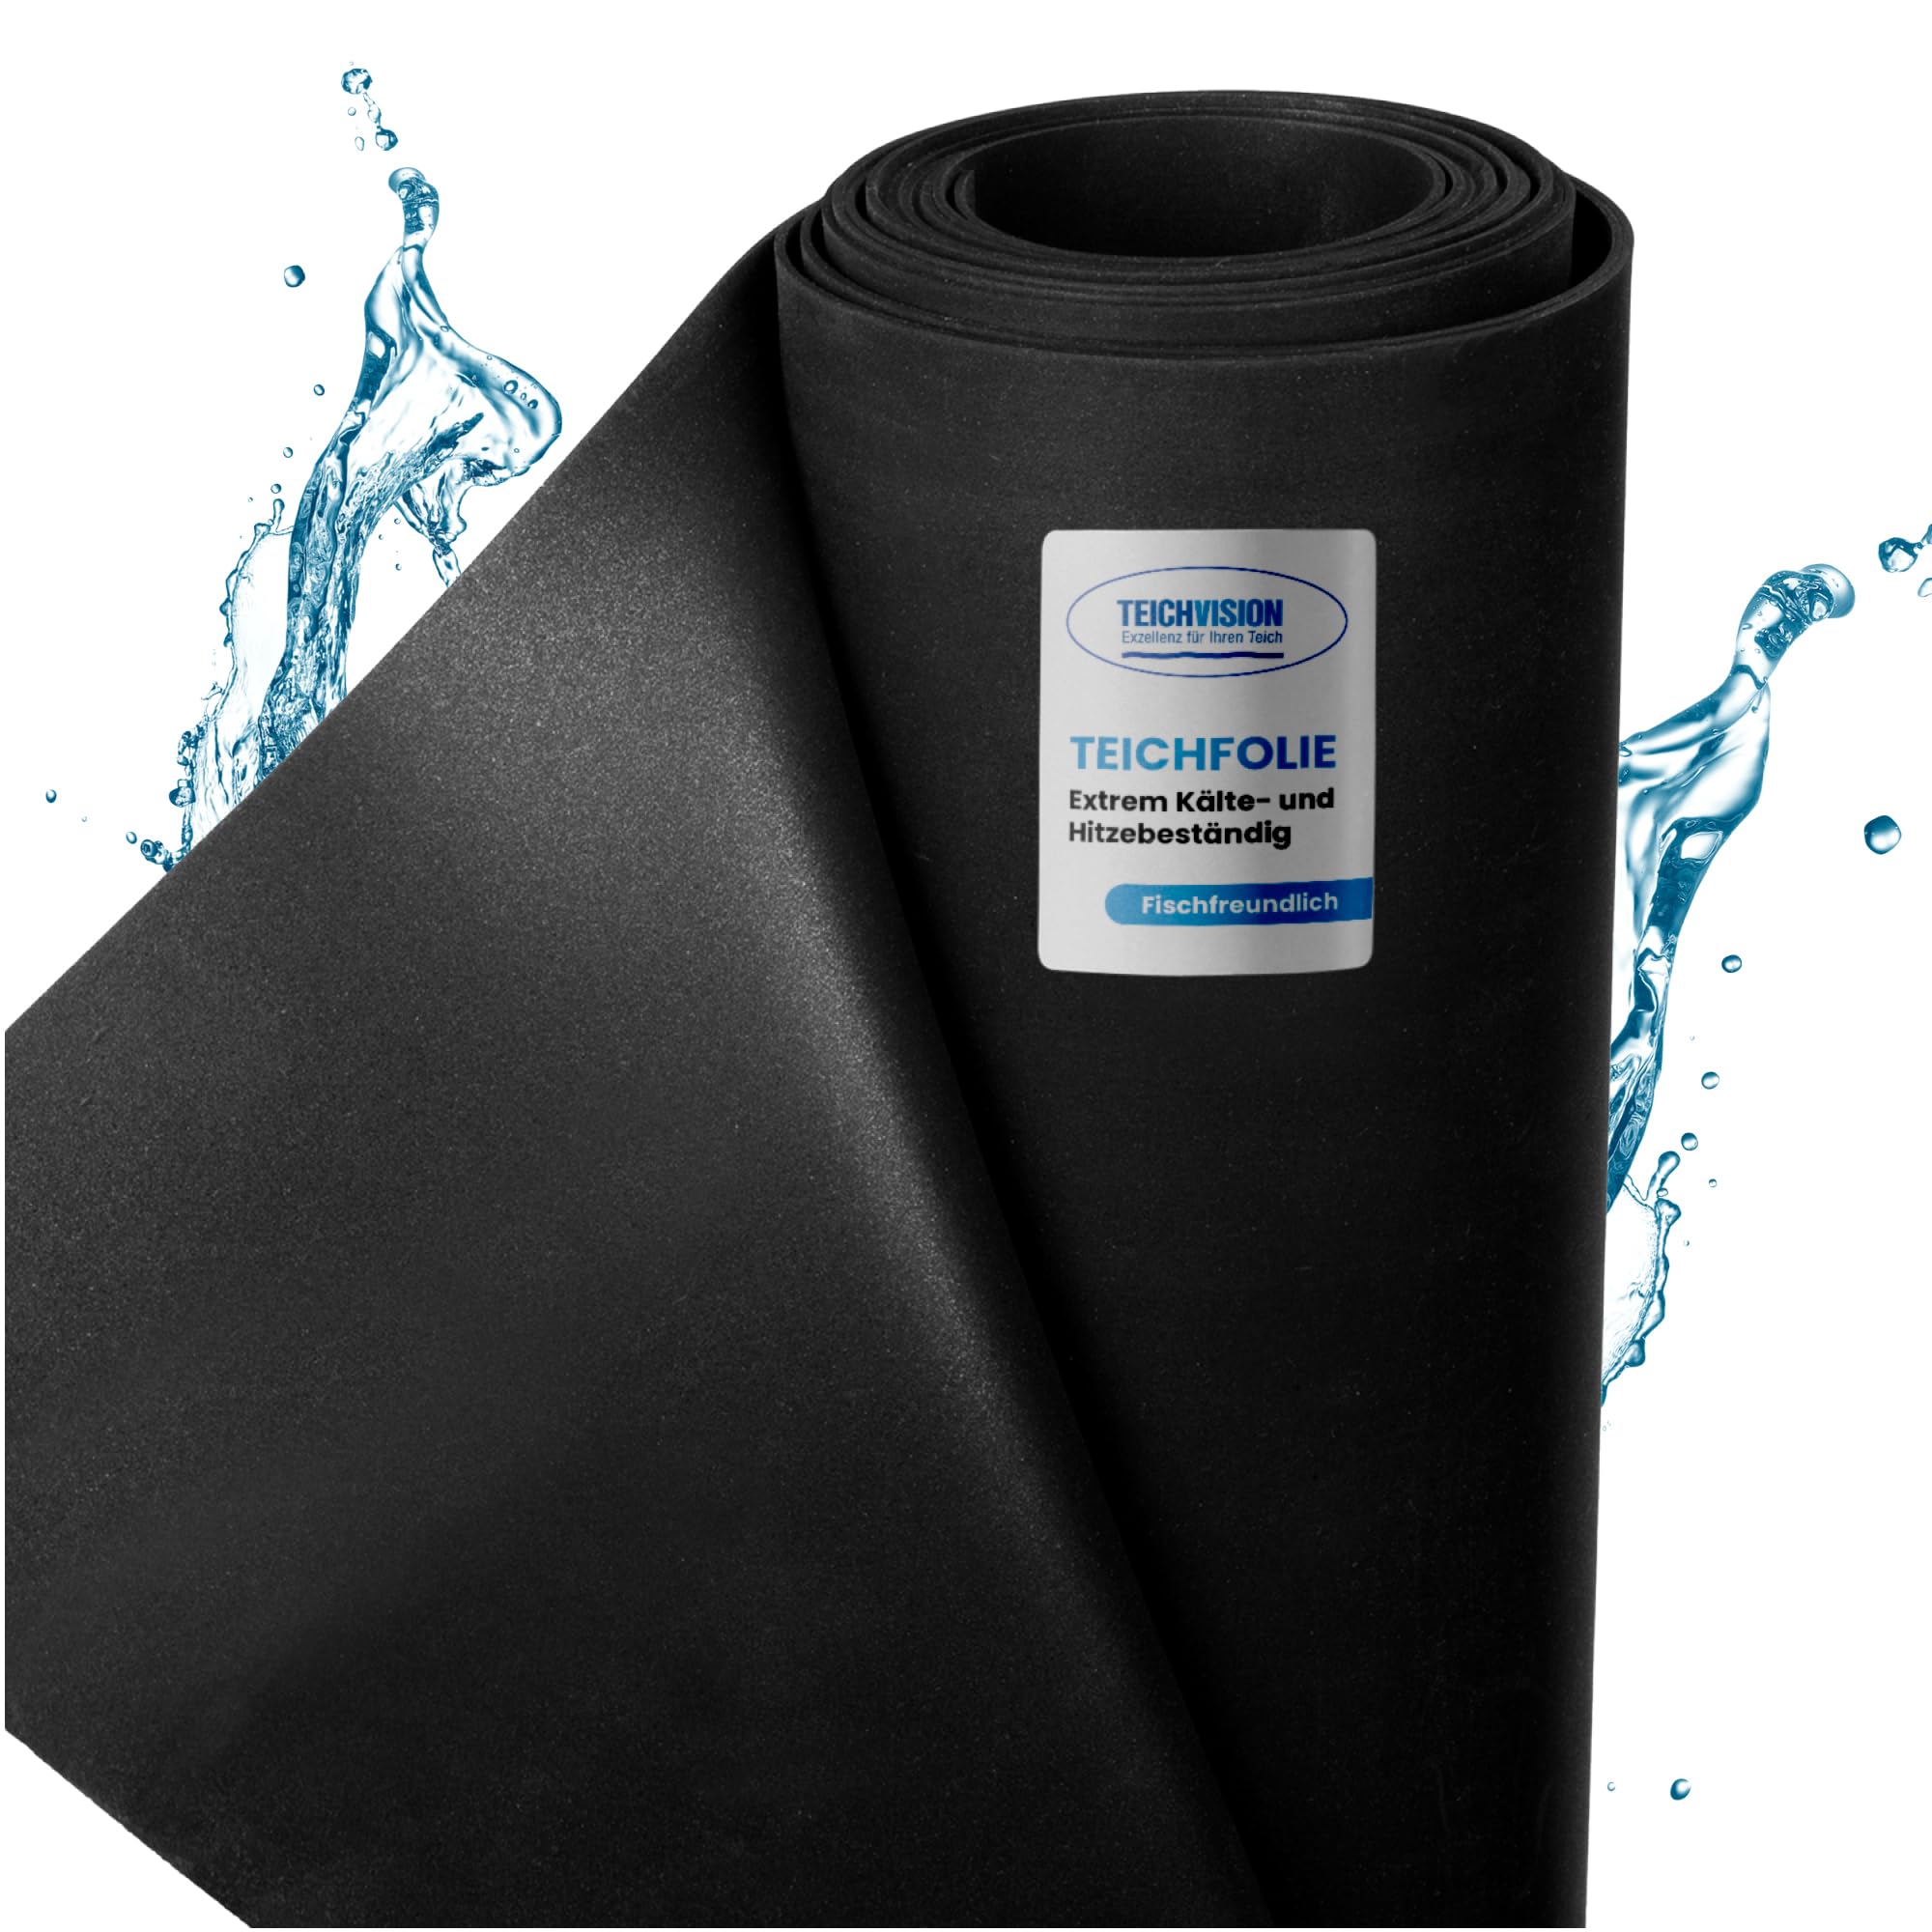 TeichVision - Premium EPDM Teichfolie Stärke 1 mm - 7,62 m x 4,5 m/naturgerechte EPDM Folie schwarz - besonders langlebig/auch geeignet als Hochbeet Folie wasserdicht